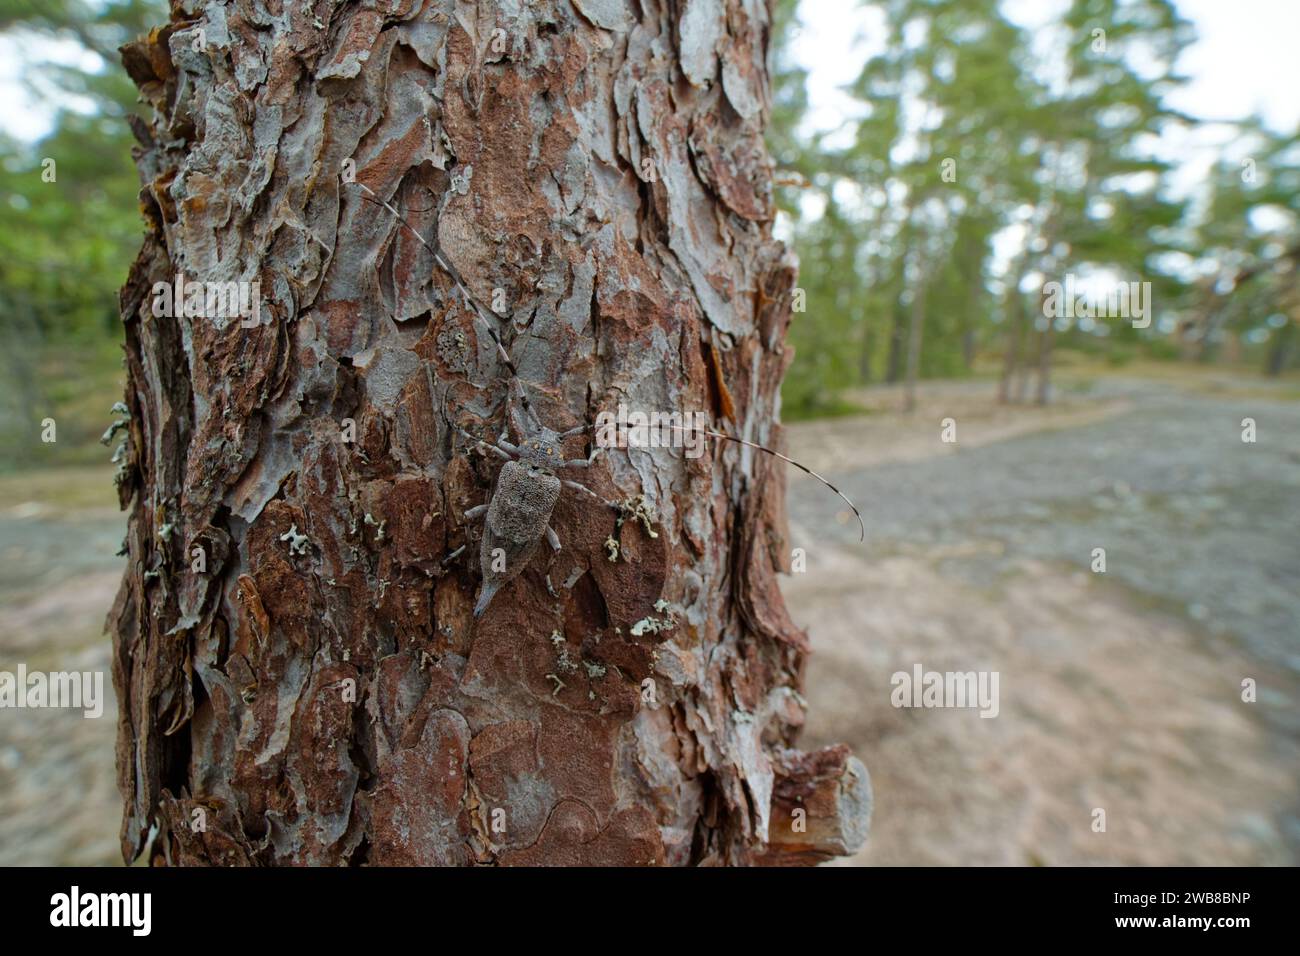 Timberman-Käfer (Acanthocinus aedilis) in seinem natürlichen Lebensraum, dem wilden Finnland Stockfoto